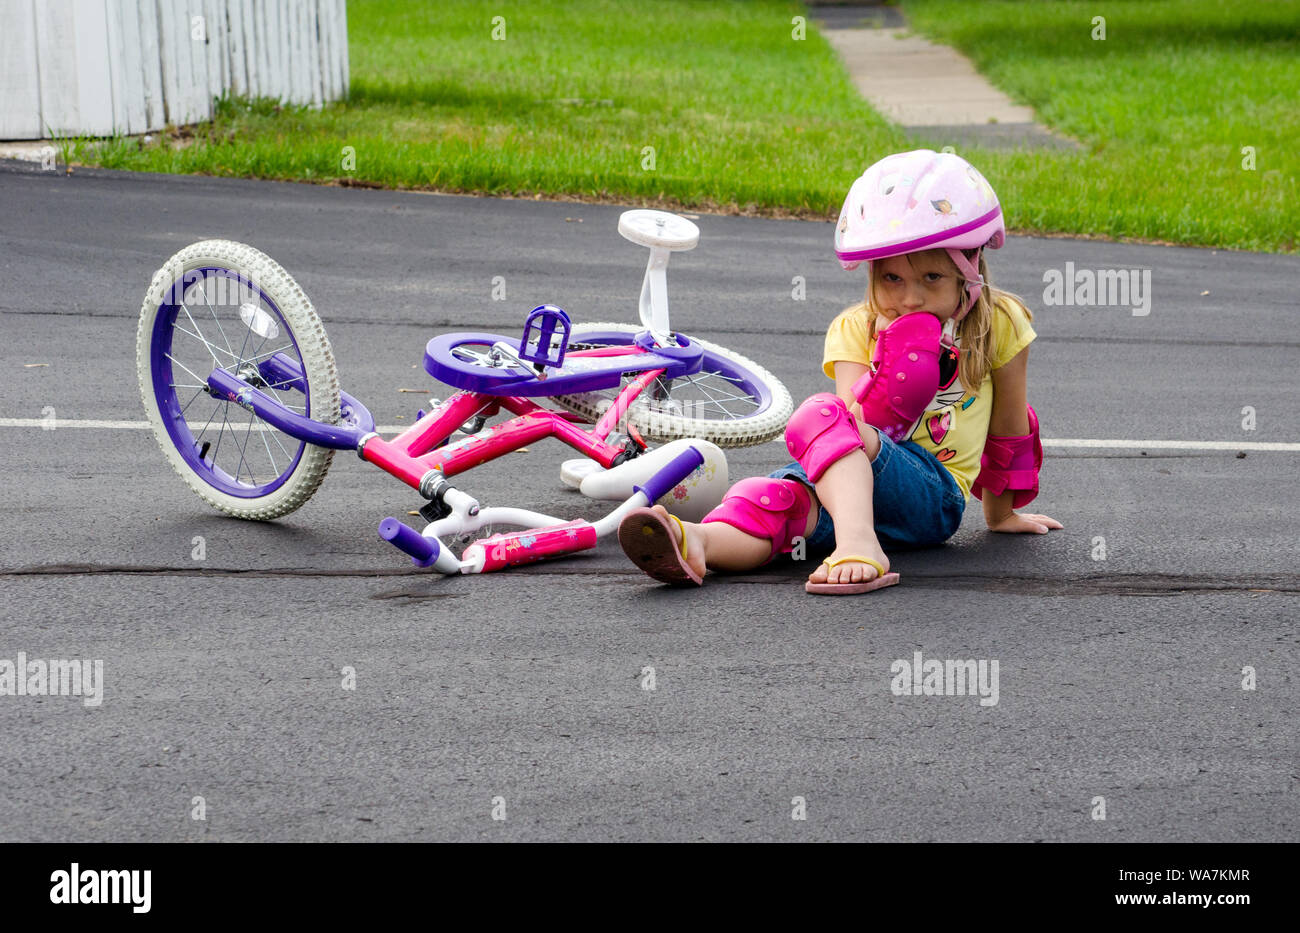 Ein kleines Mädchen in Sicherheitsausrüstung sitzt mitten in einer Fahrt, nachdem es von ihrem neuen Fahrrad gefallen ist. Stockfoto